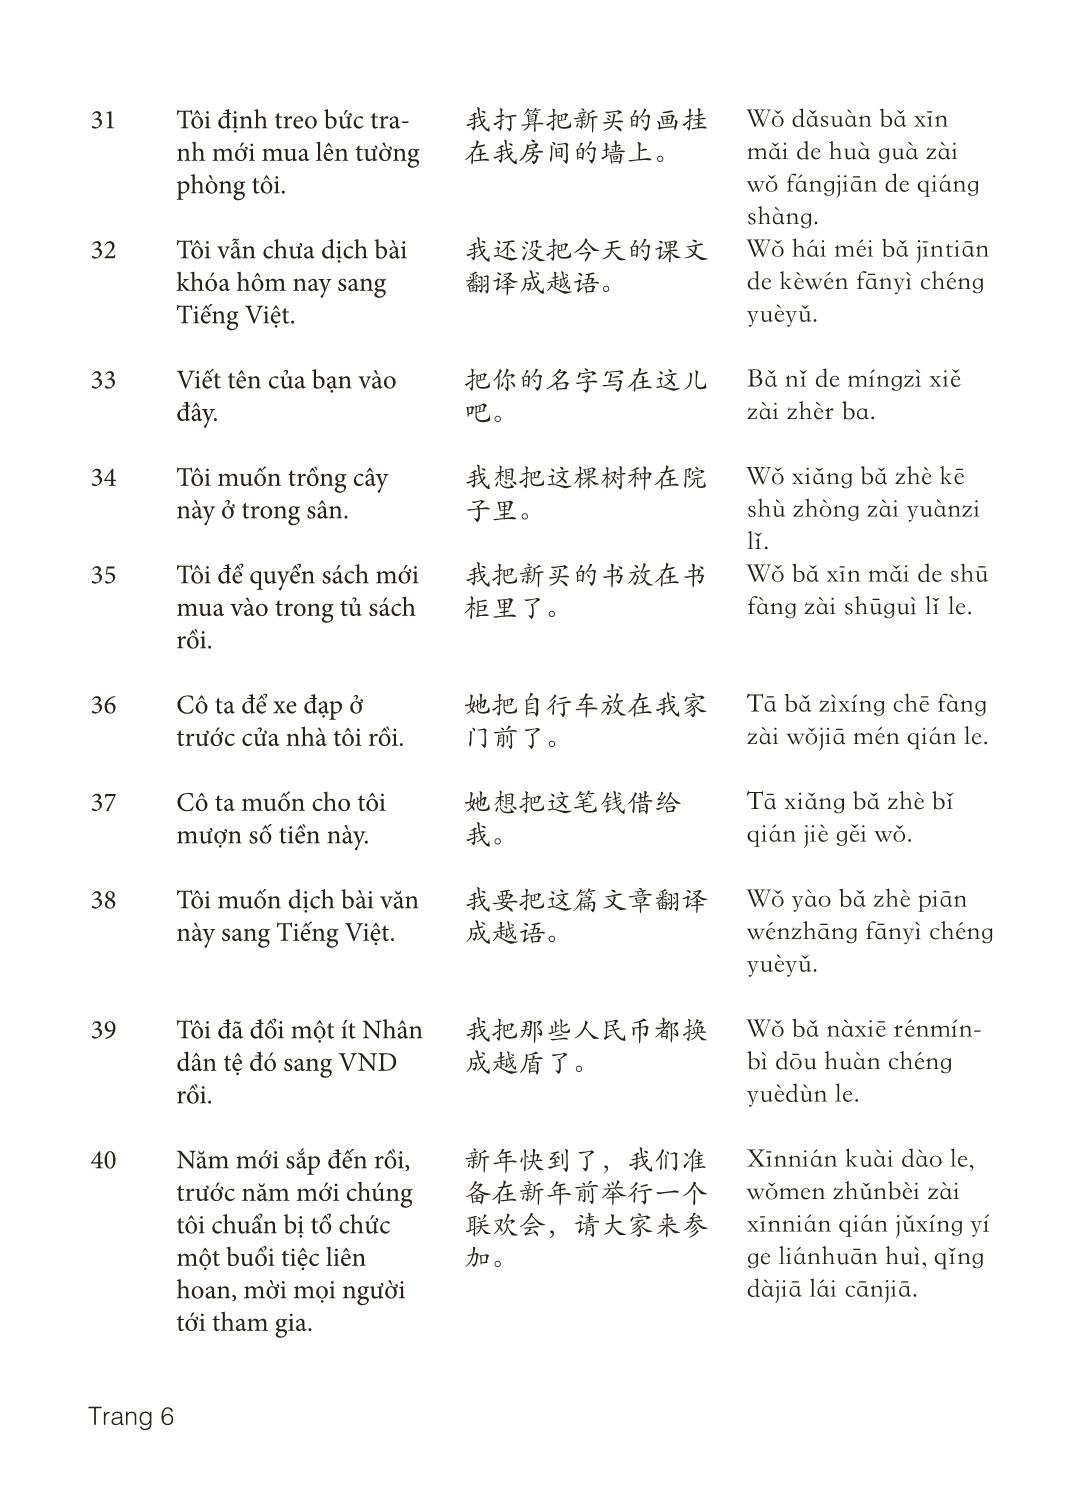 3000 Câu đàm thoại tiếng Hoa - Phần 21 trang 6